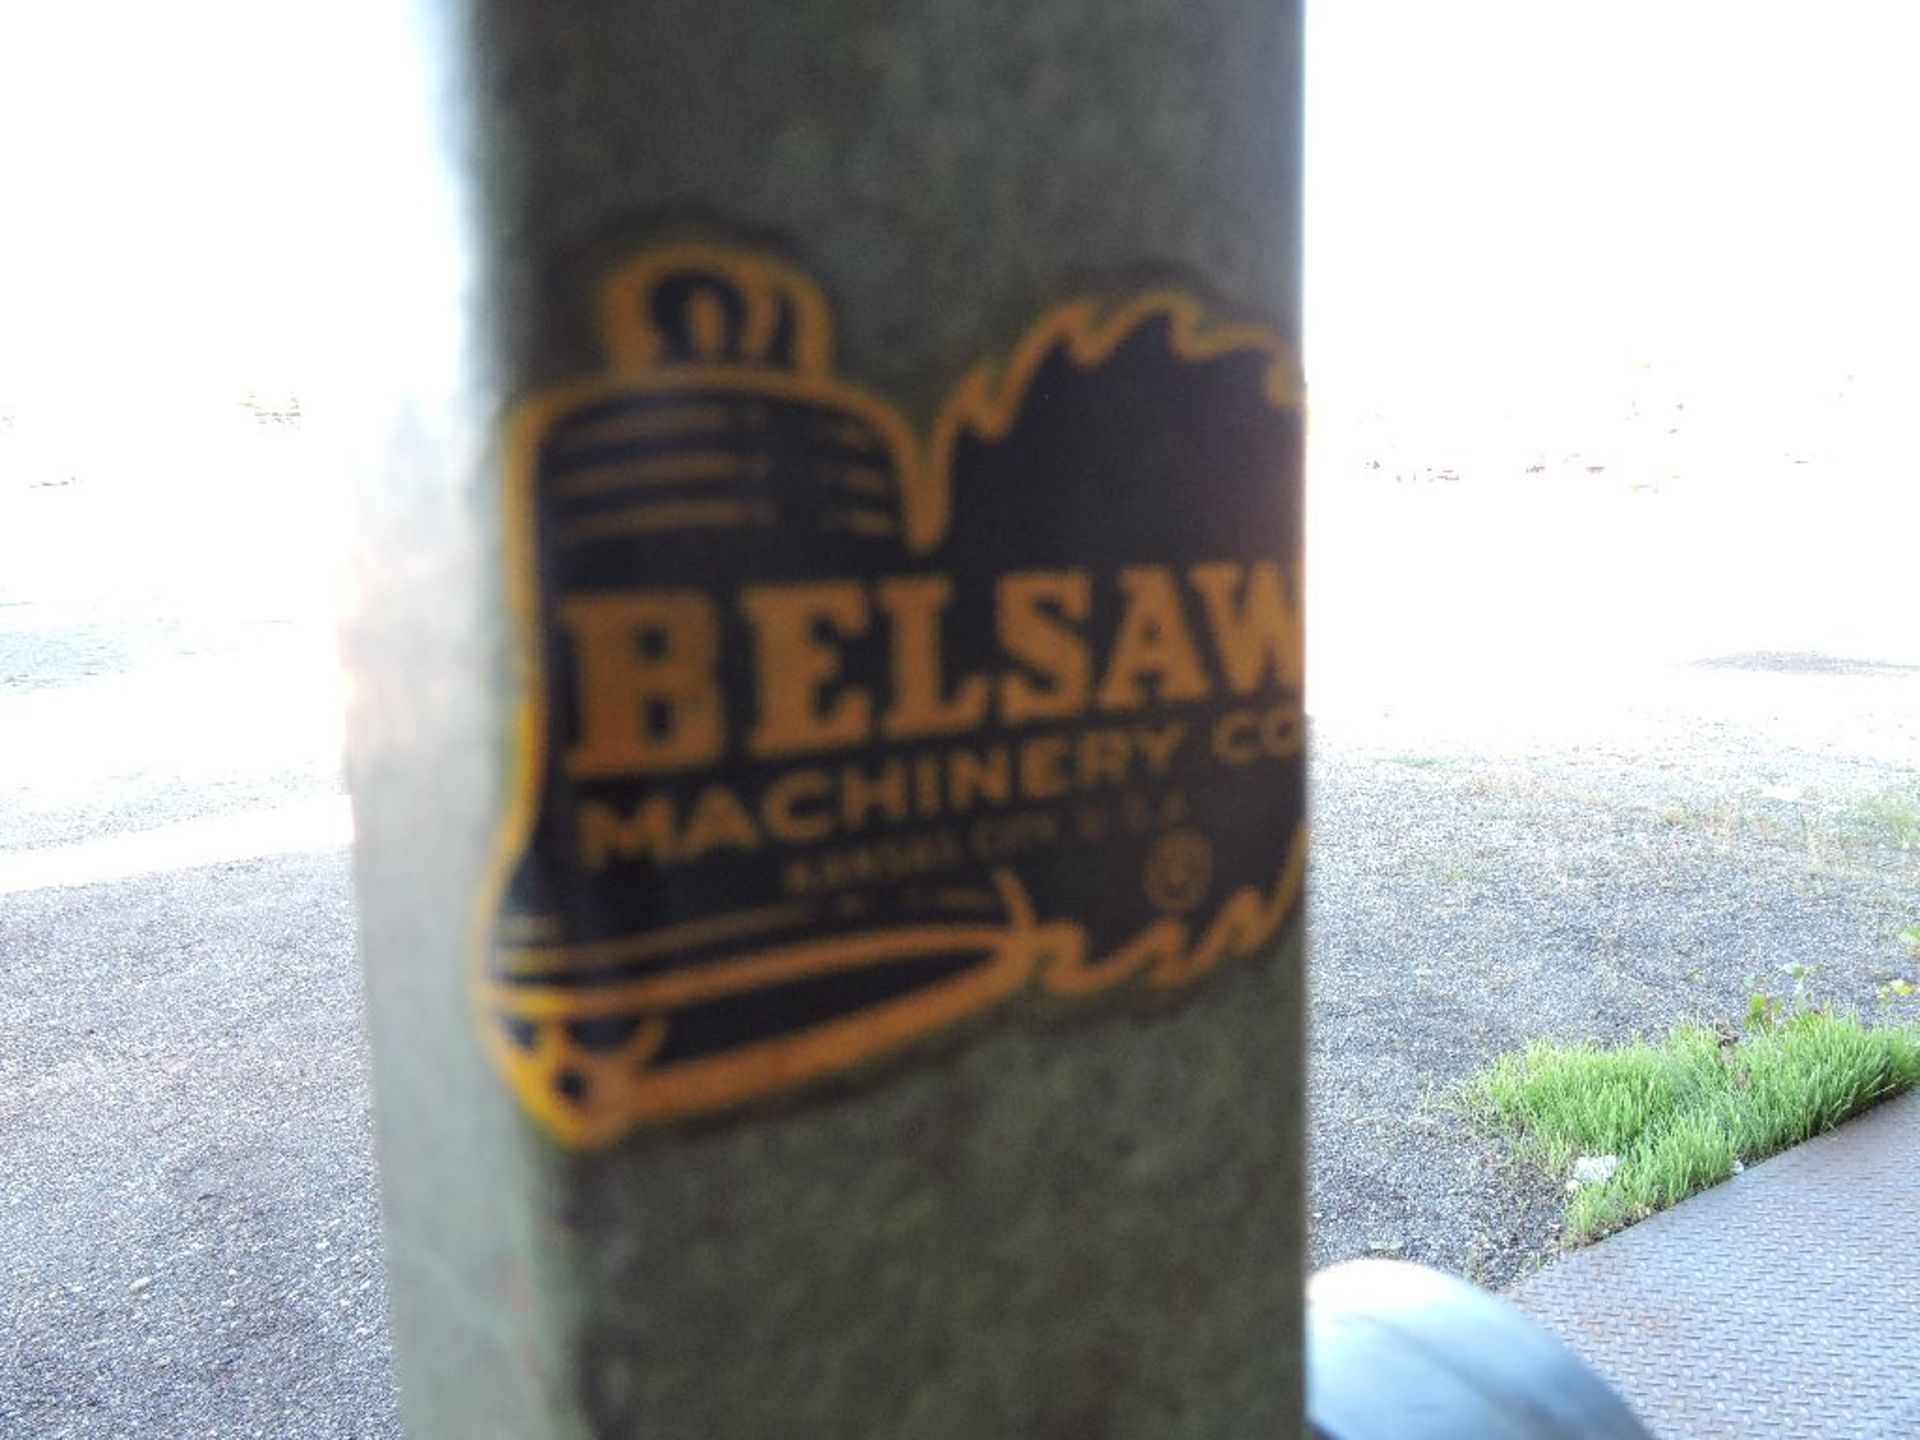 Belsaw 1" belt sander. - Image 3 of 3